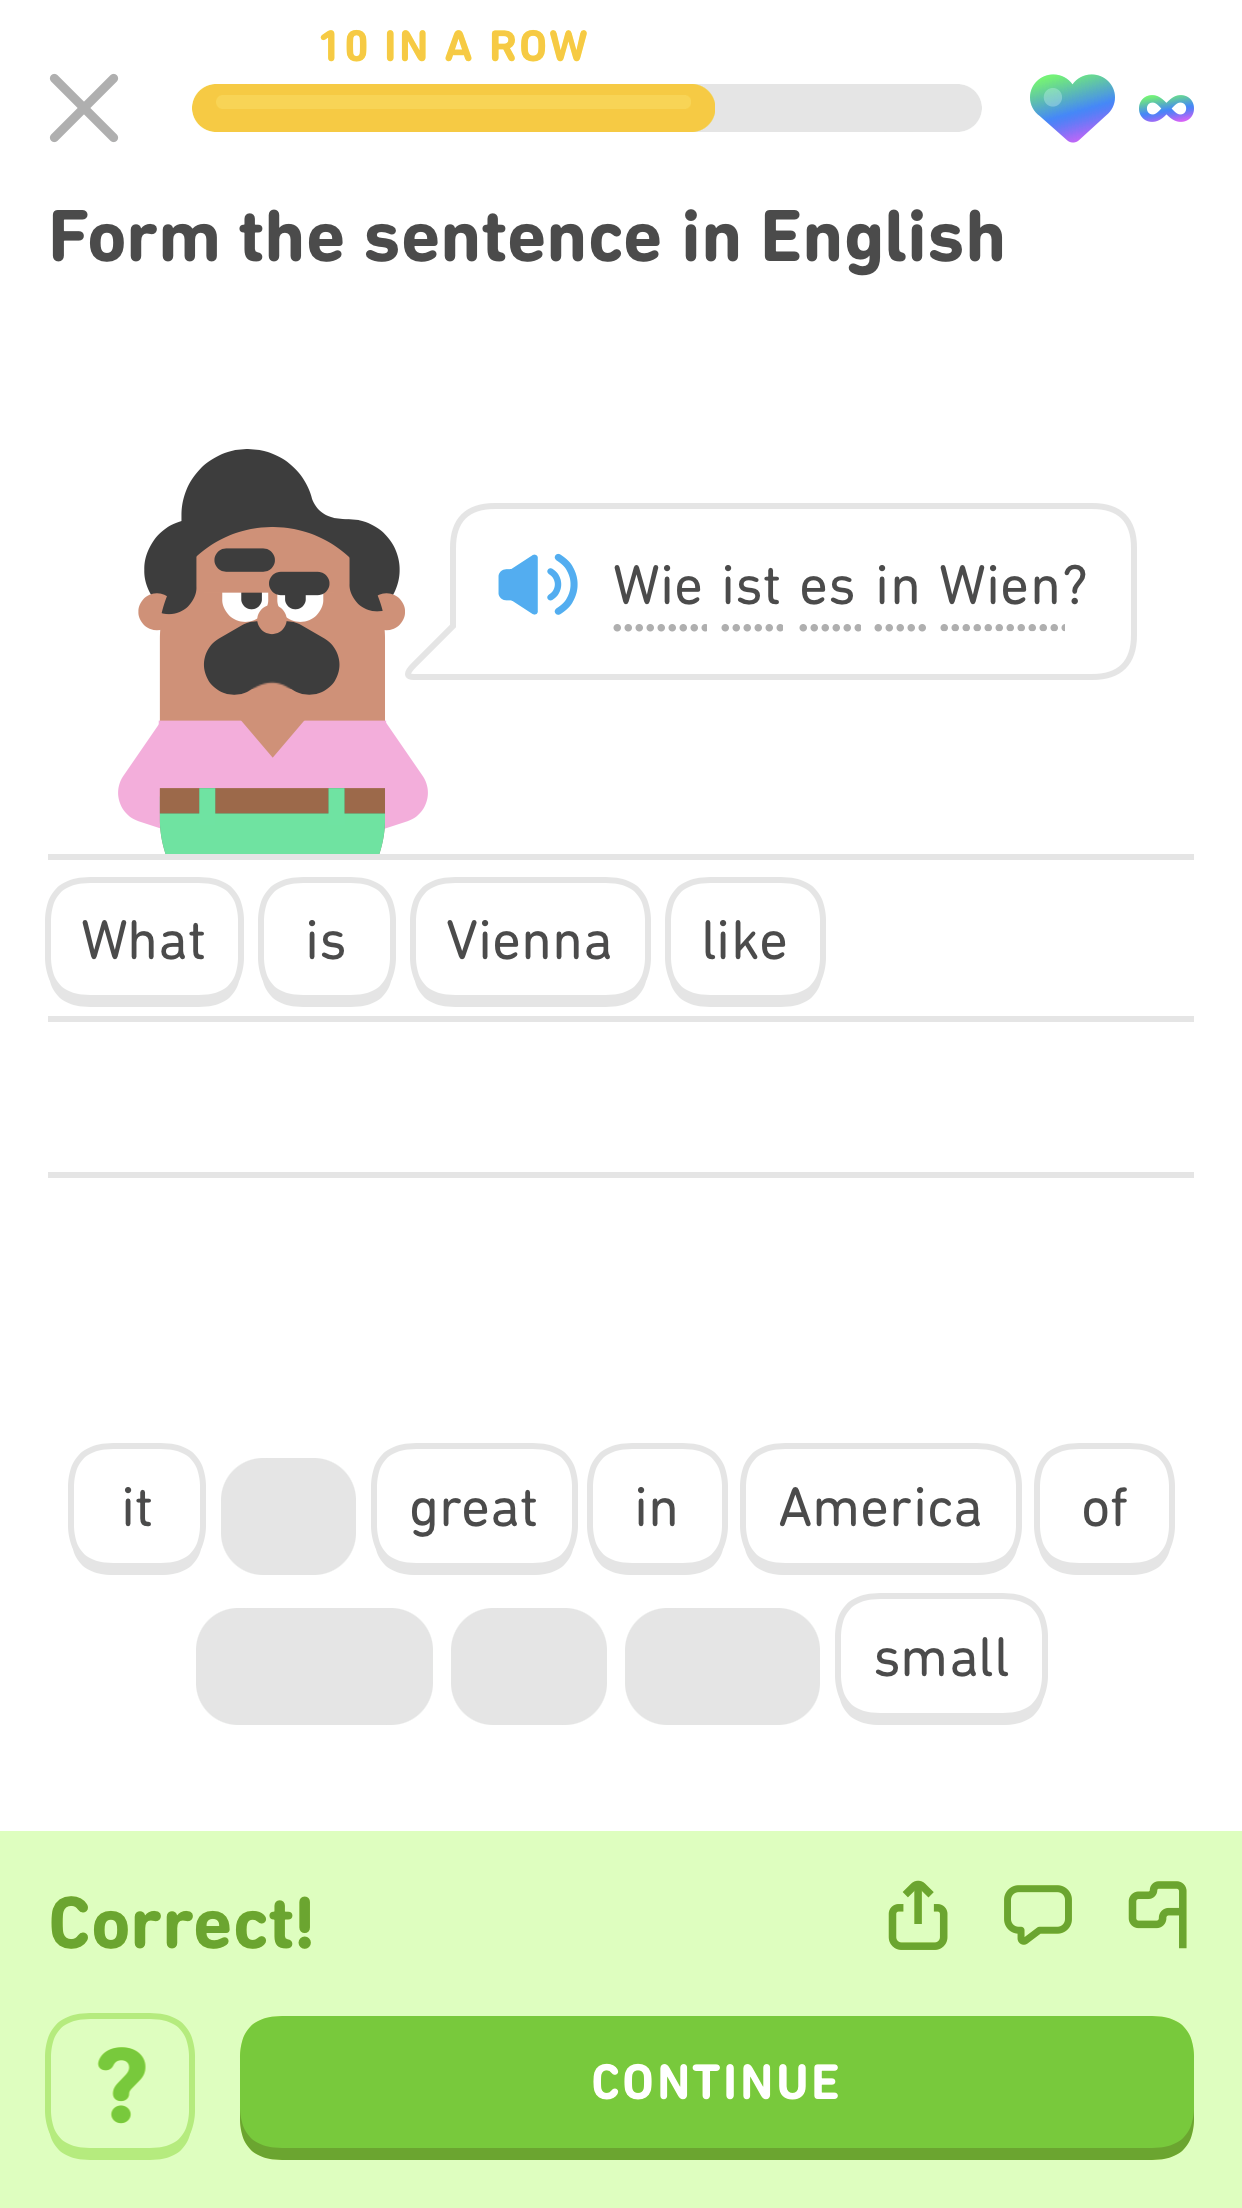 captura de pantalla de un ejercicio en inglés para la oración en alemán “Wie ist es in Wien?”. Abajo, aparece escrito en inglés “What is Vienna like? (“¿Cómo es Vienna?”). En la parte inferior de la pantalla hay un mensaje en verde que indica que la respuesta es correcta.